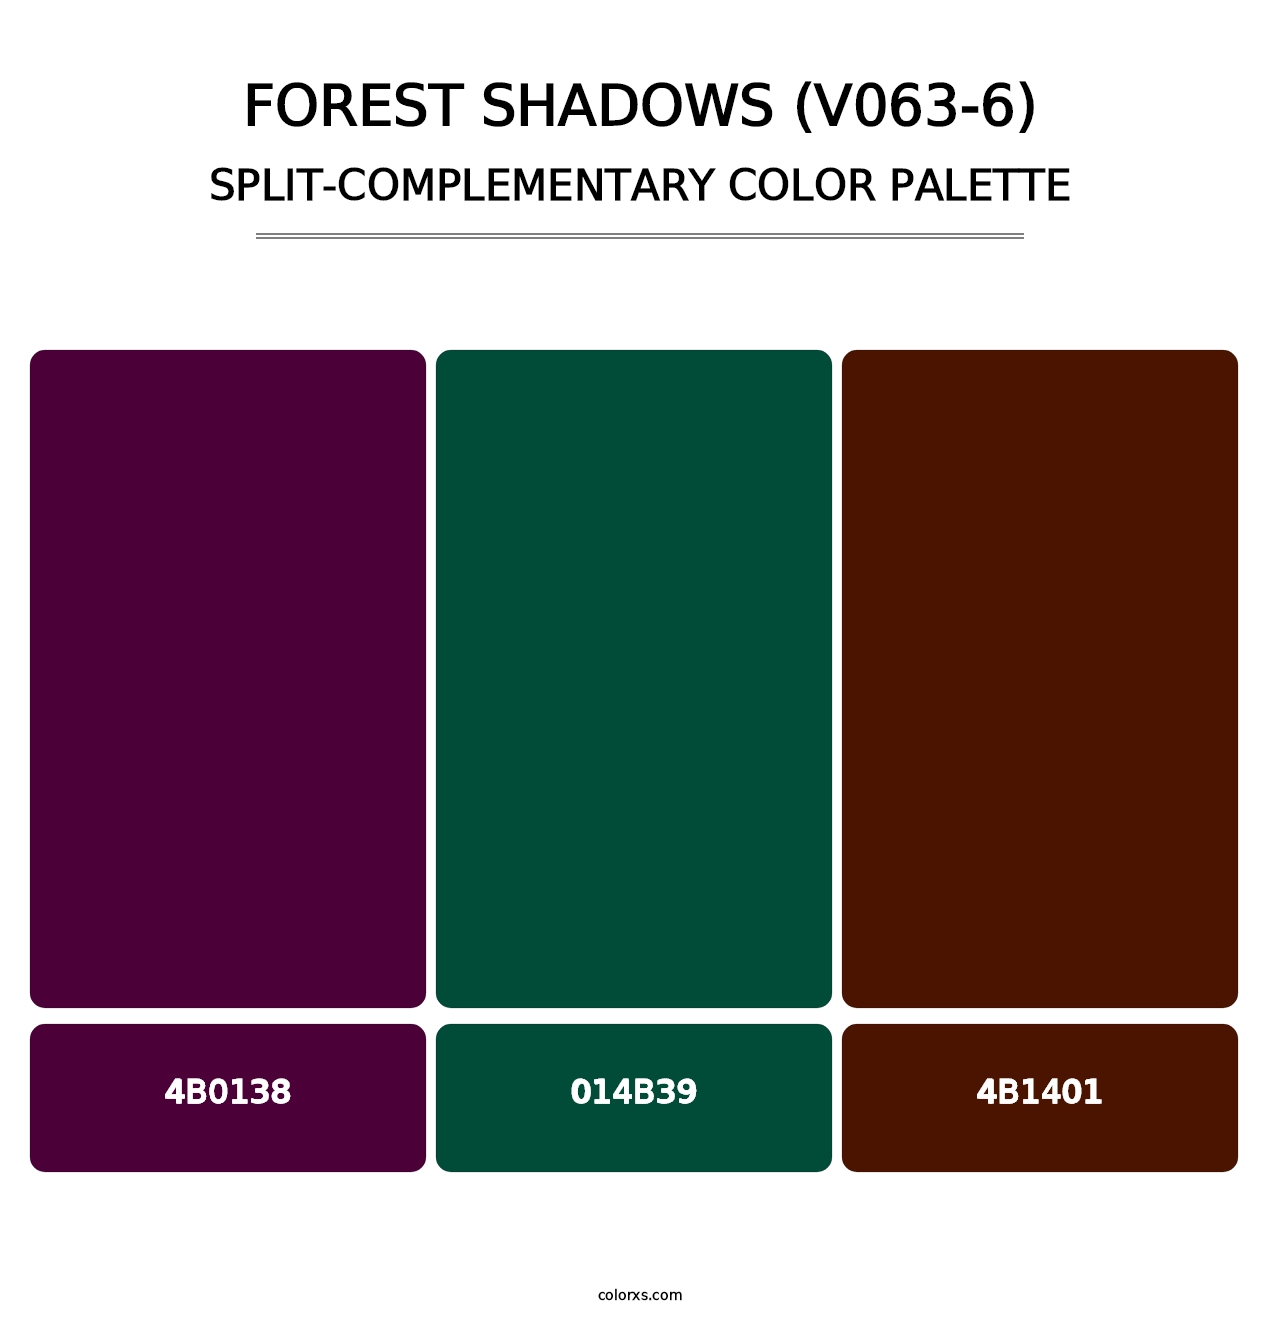 Forest Shadows (V063-6) - Split-Complementary Color Palette